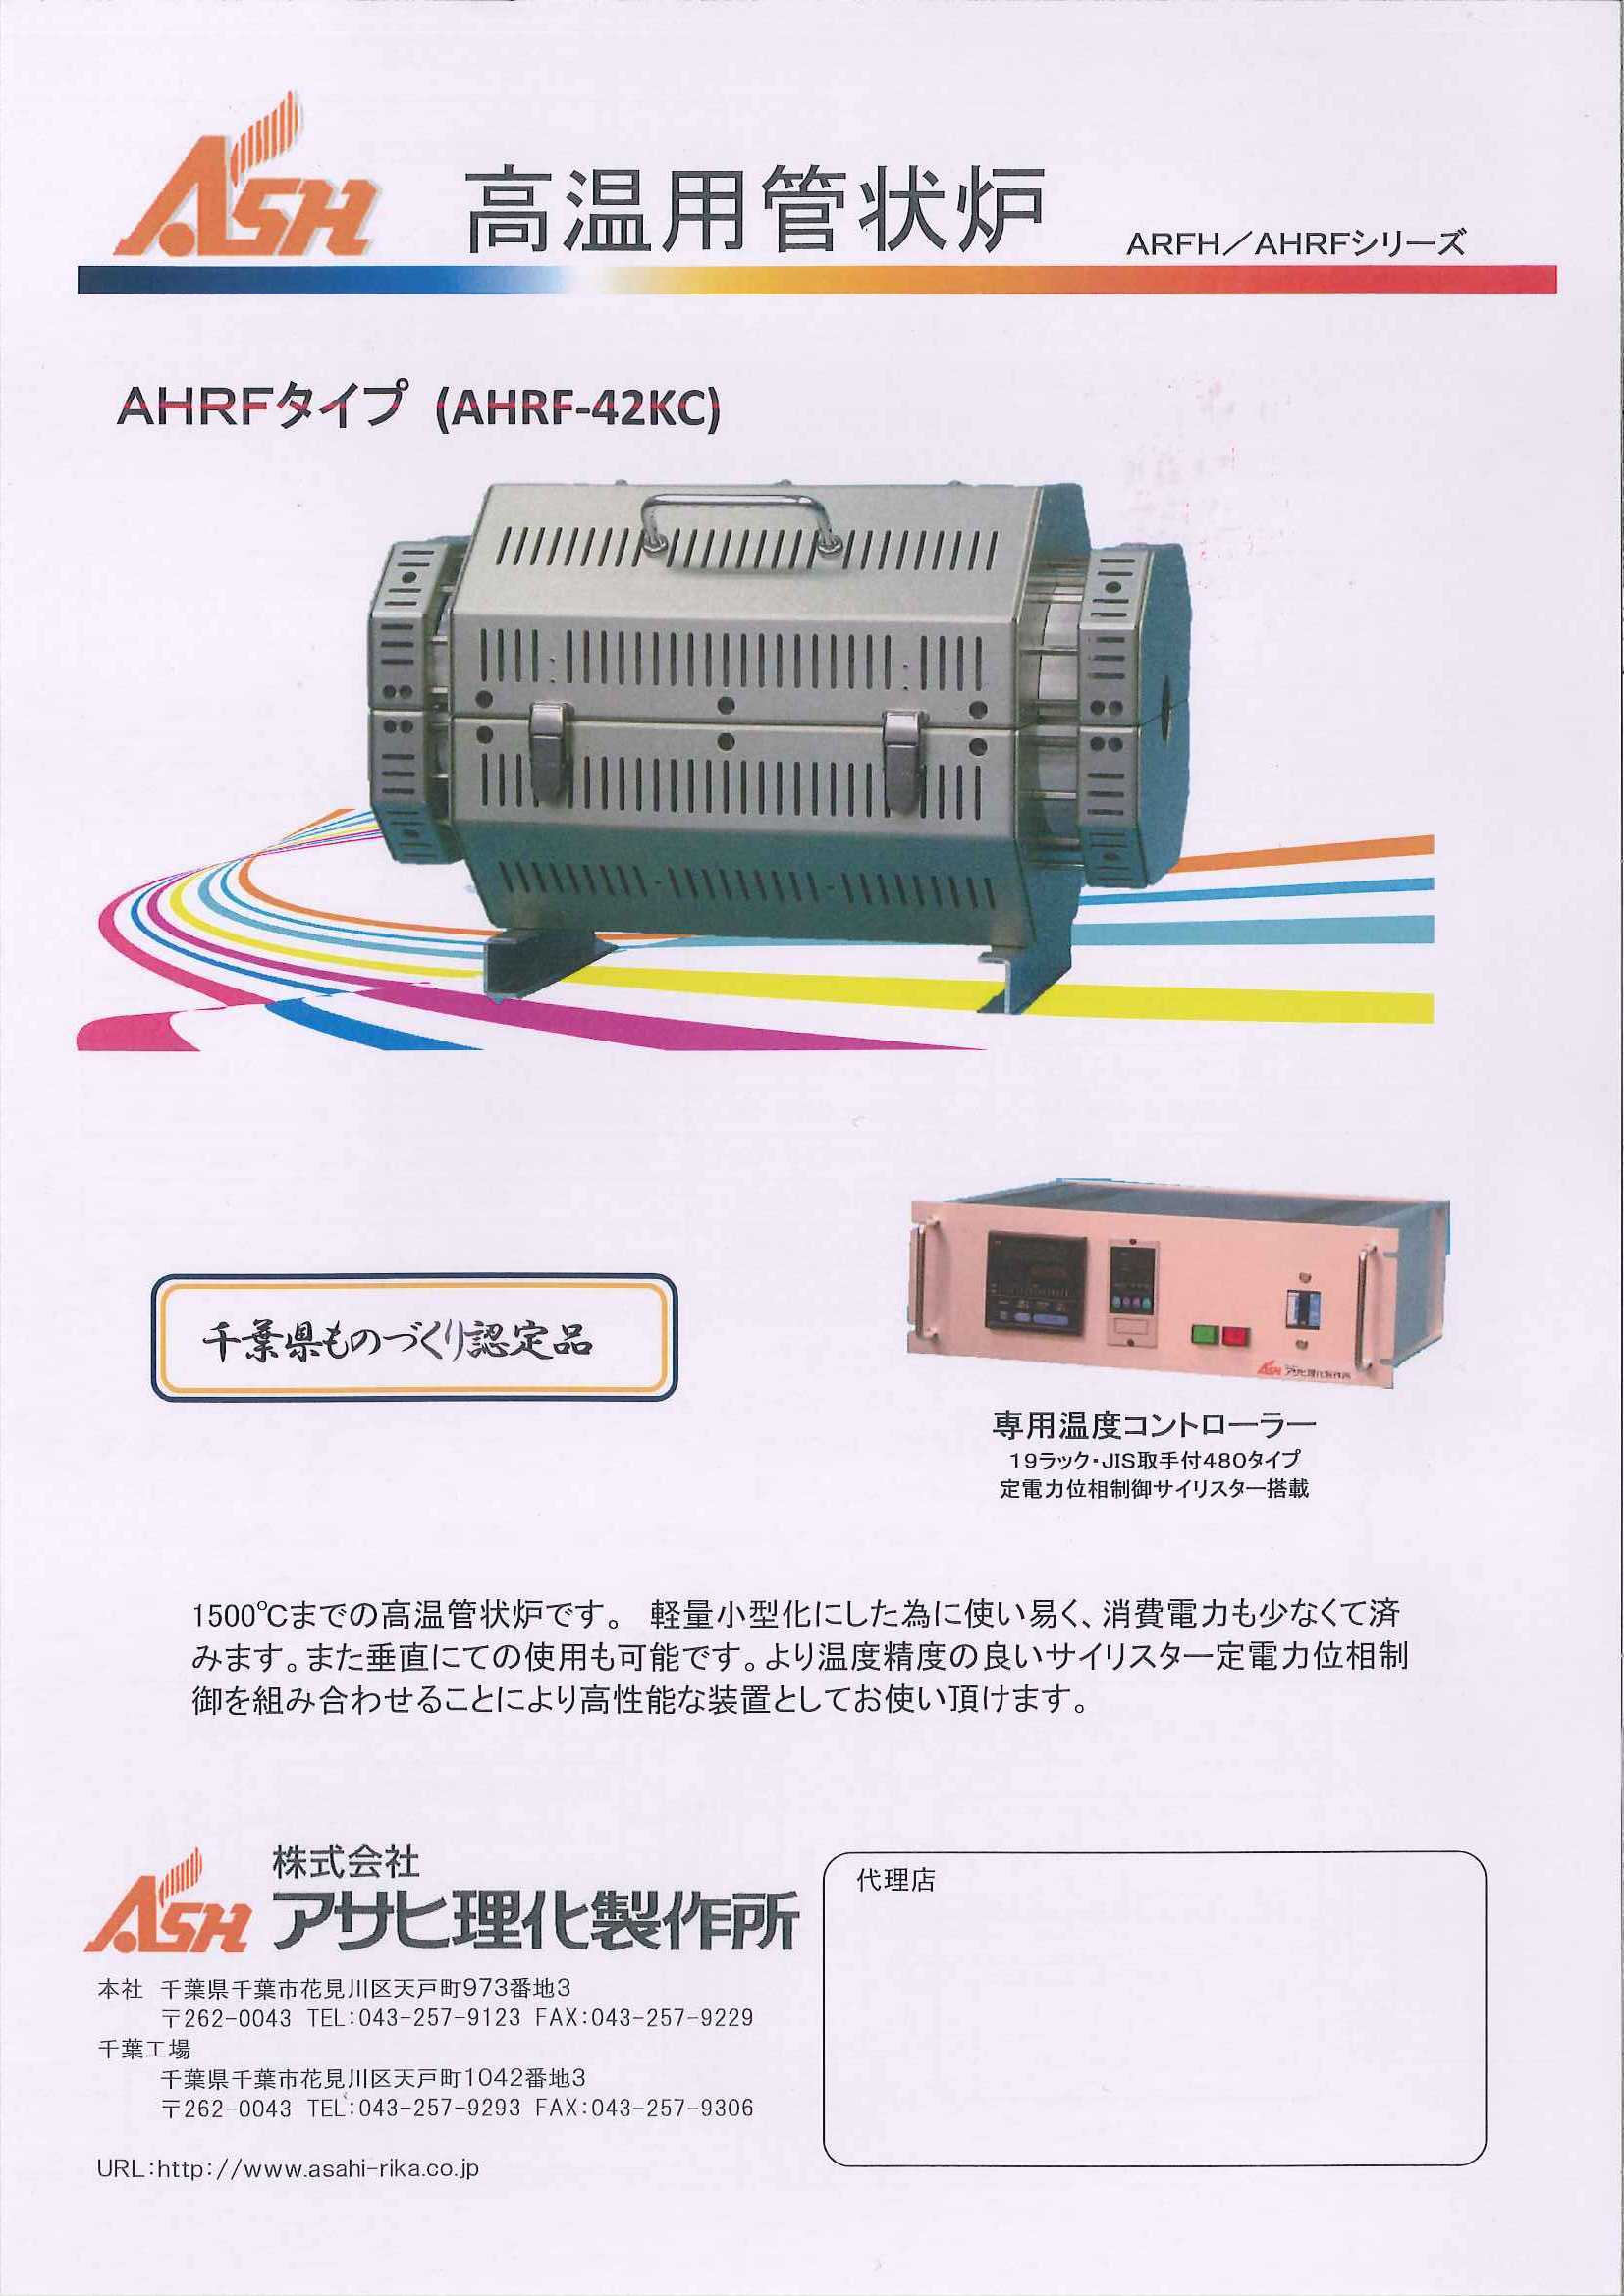 満点の タツマックスメガ店アサヒ 管状炉 株 アサヒ理化製作所 ARF-20KC 455-0421